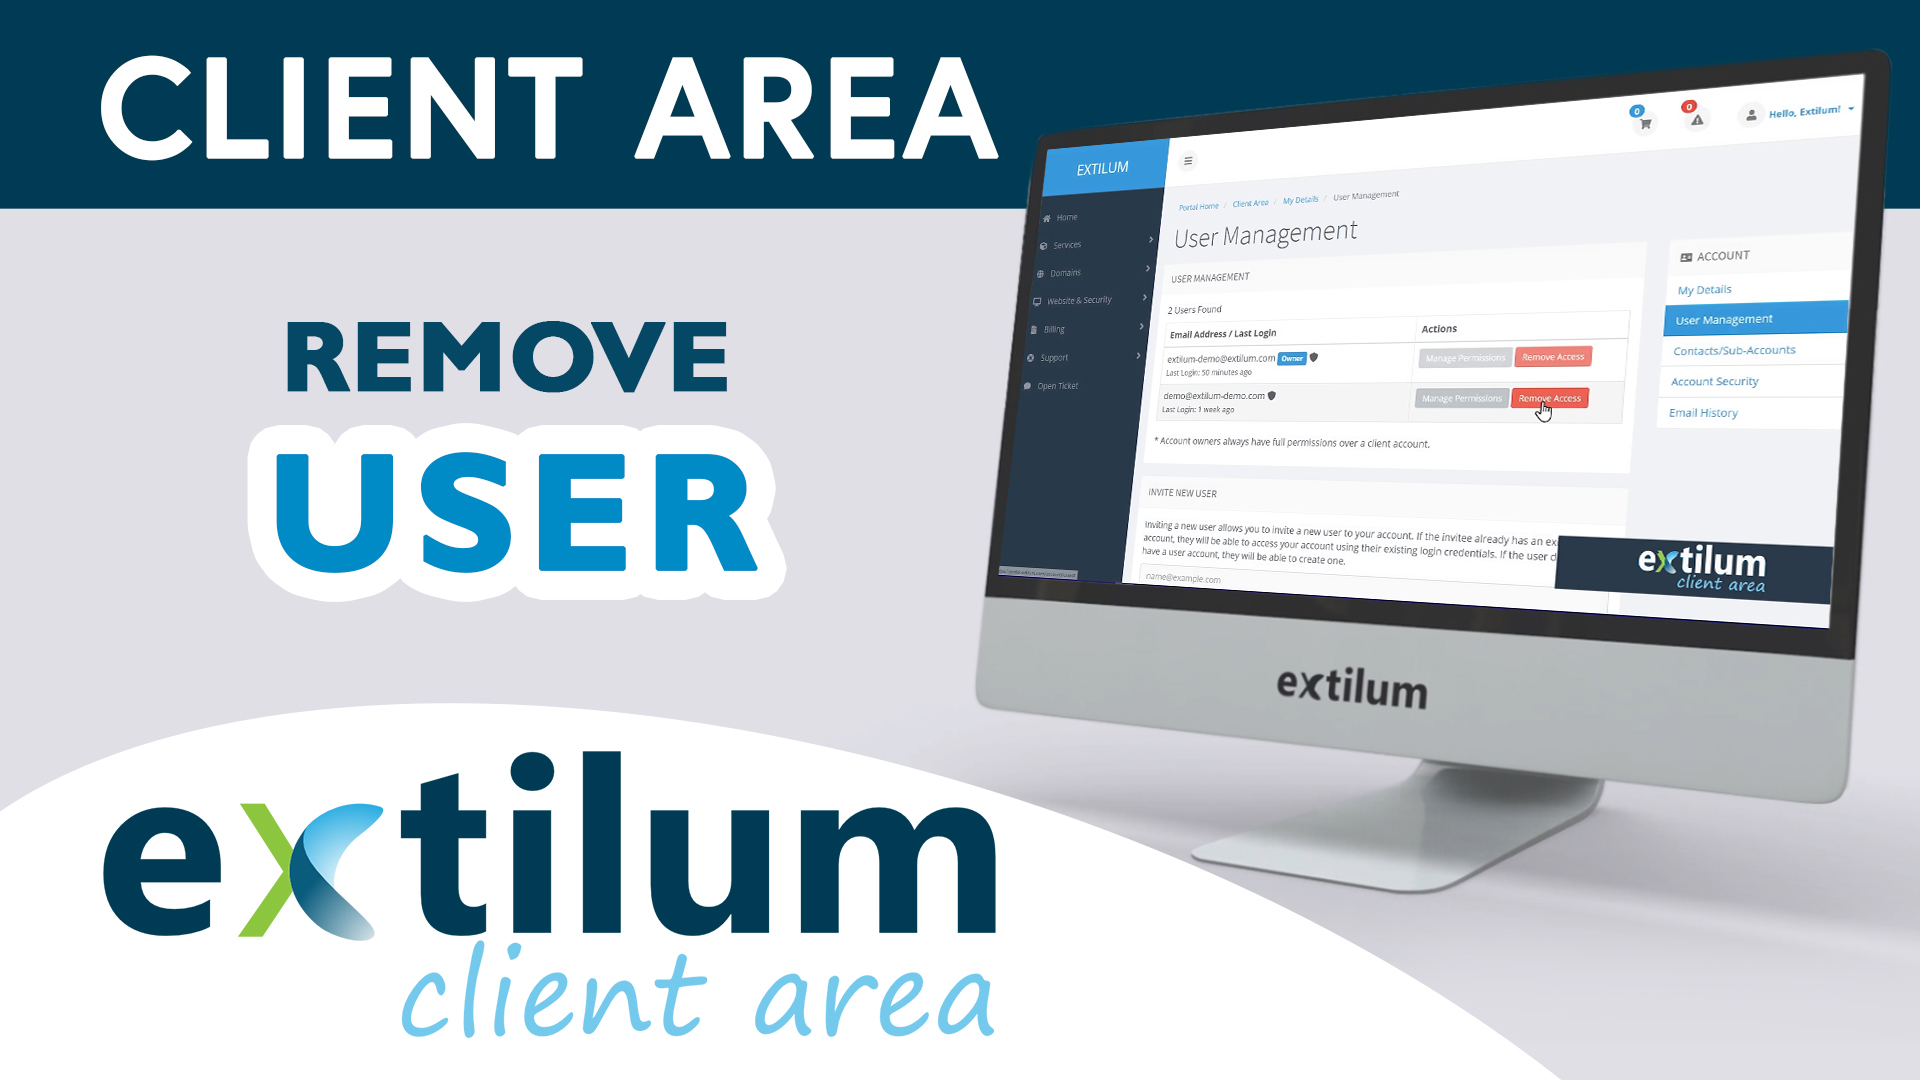 Extilum Client Area - Remove User